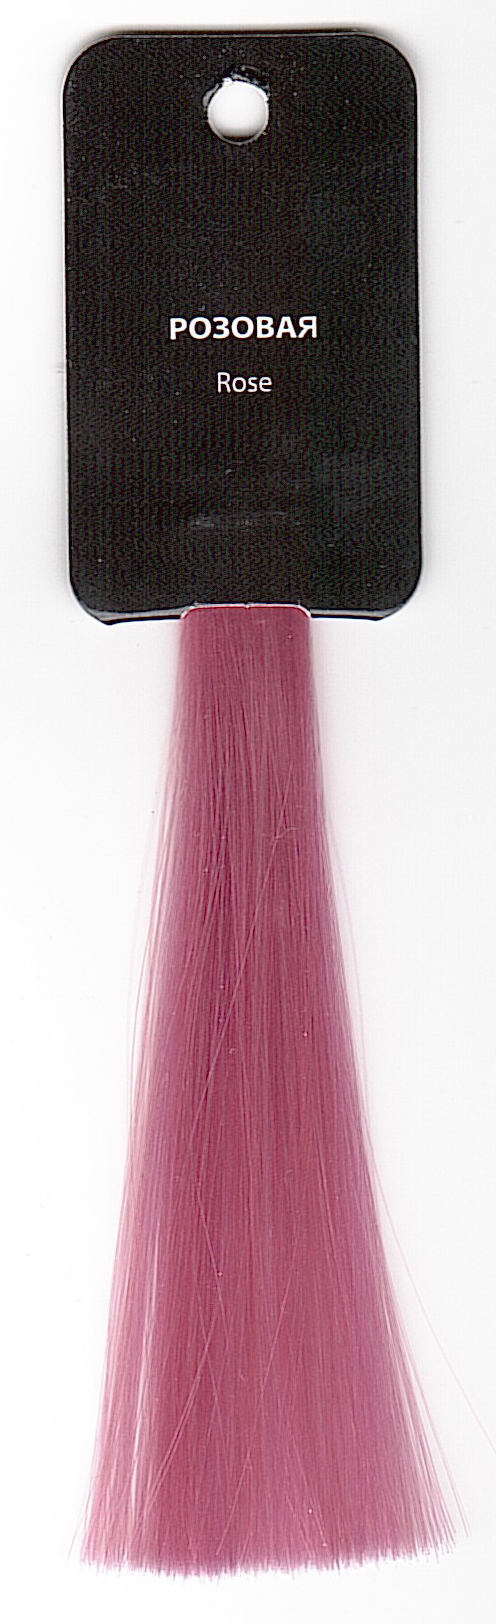 Оттеночная маска для волос с маслом монои "Розовая", 250ml